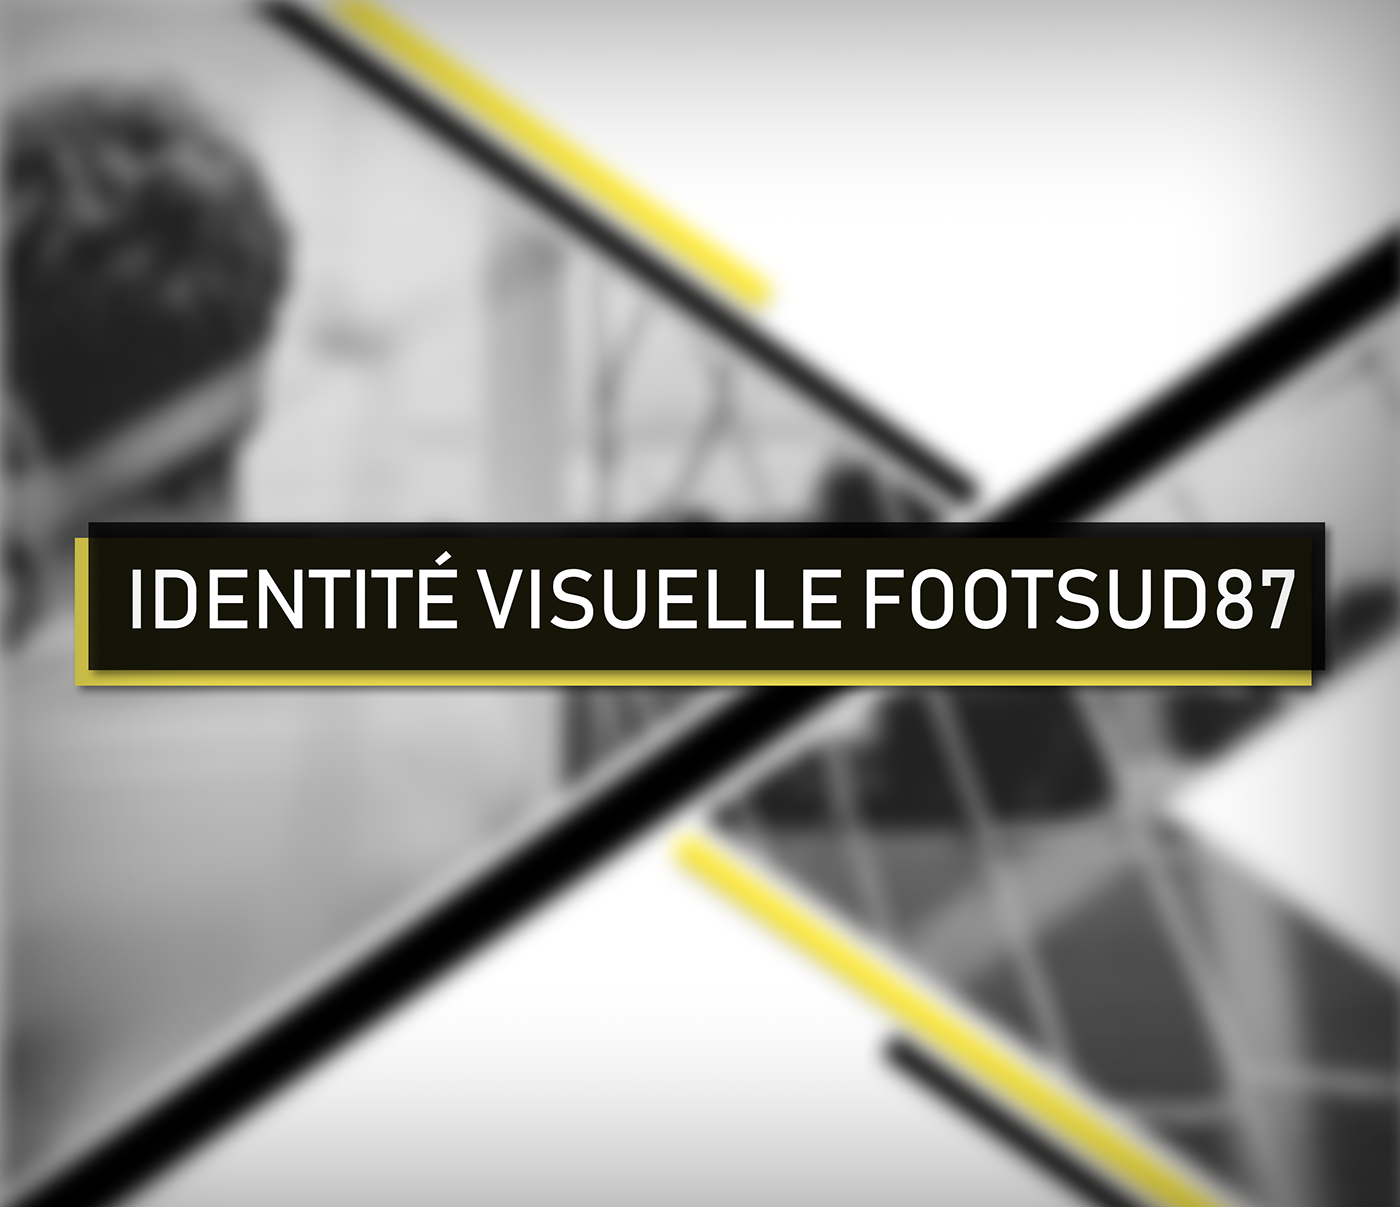 logo foot foot sud 87 embleme ecusson lion pierre buffière identité visuelle football